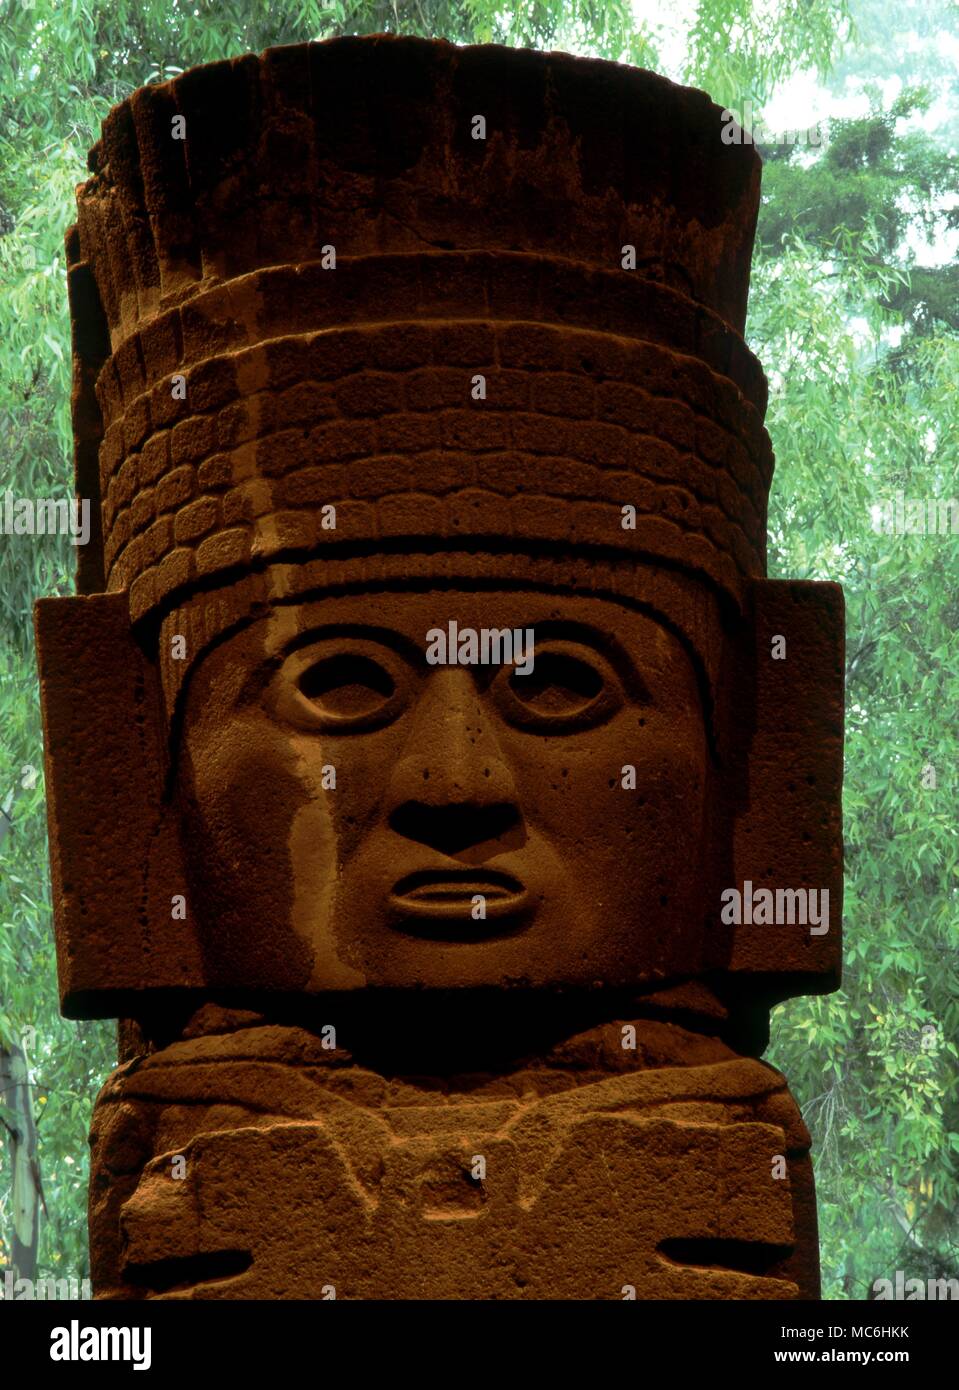 Gigantesca estatua de Chalchiuhtlicu Tolteca, la diosa del agua terrenal - monolito pesa casi 60 toneladas. Museo Antropológico nacional. Ciudad de México Foto de stock